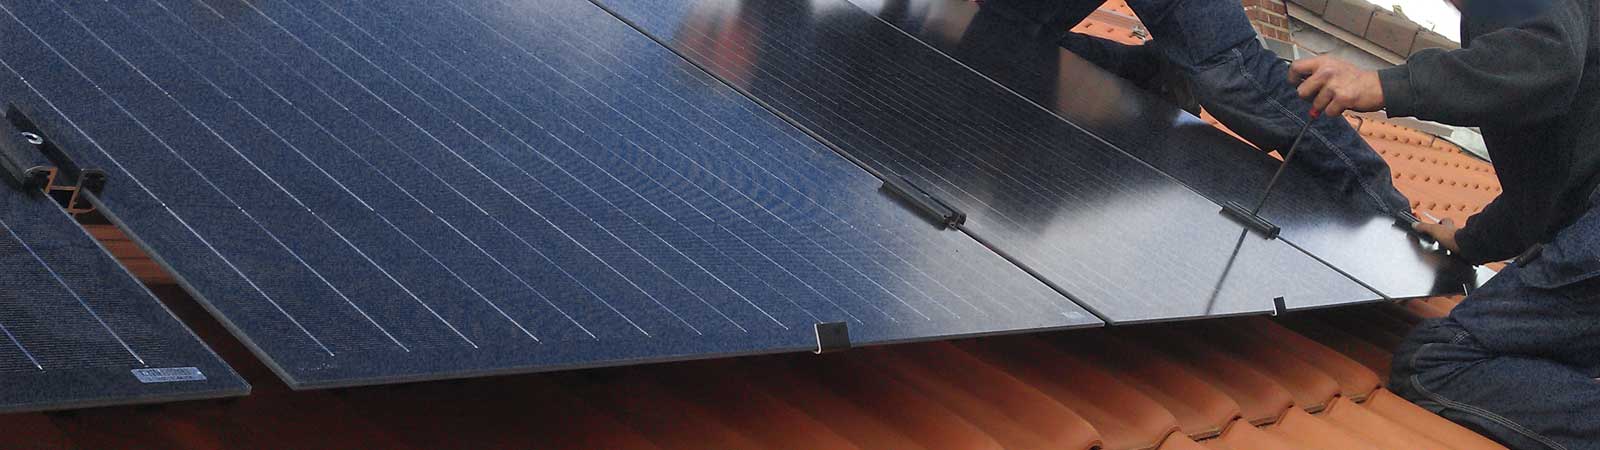 Modul Photovoltaik Solar Modulbefestigung 8  Alu Klemmplatten Mittelklemmen f 